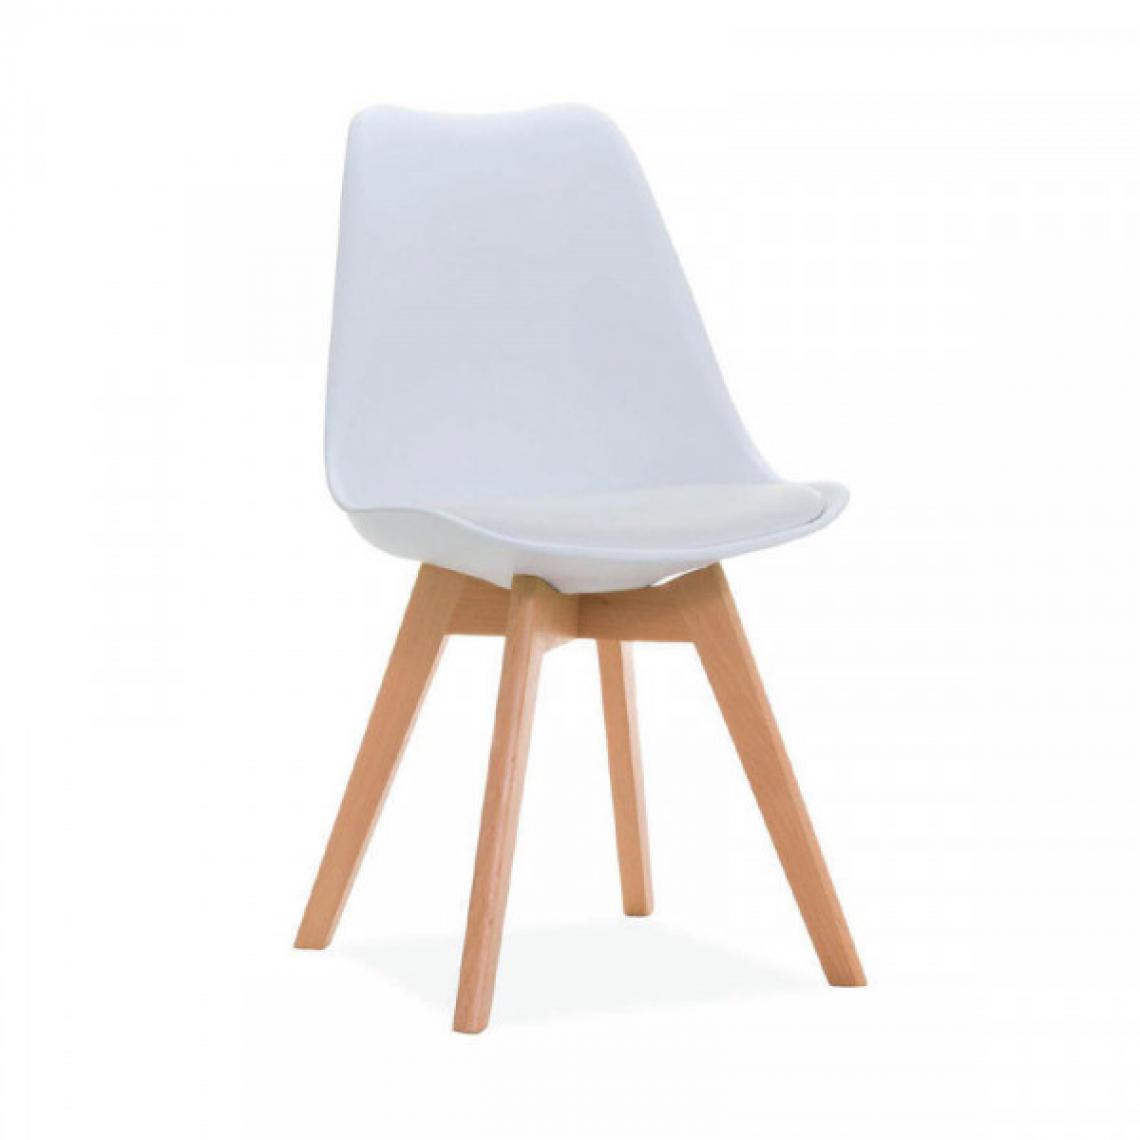 Dansmamaison - Chaise Blanche avec coussin - OLAF - L 47 x l 47 x H 85 cm - Chaises